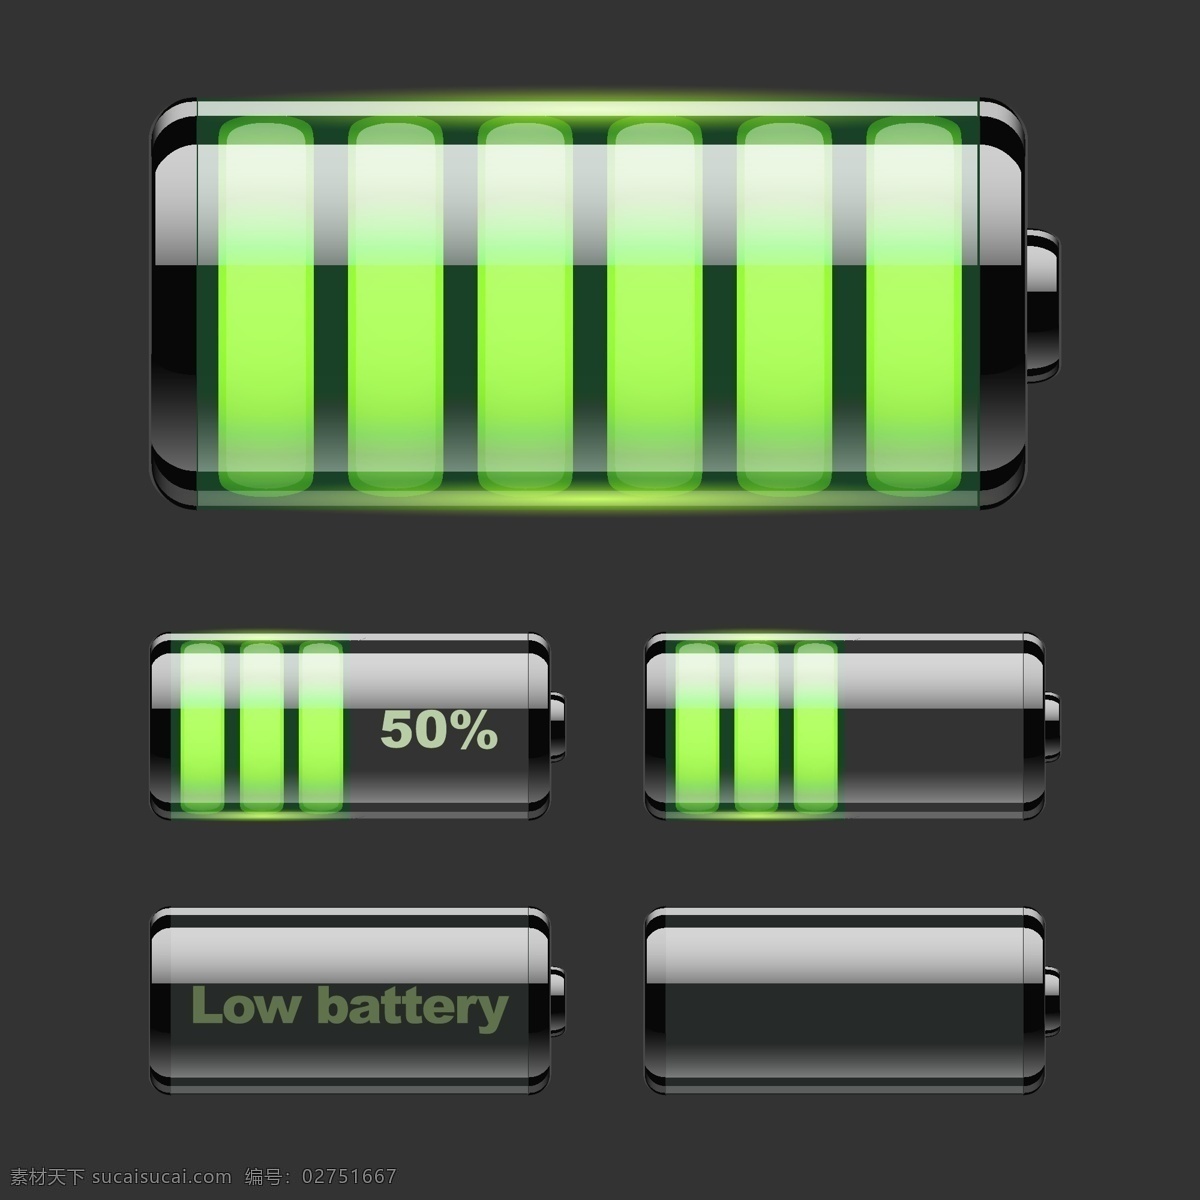 手机电池 电量 图标 矢量 电池图标 电池电量 炫彩电池 电池 格式 矢量图 其他矢量图